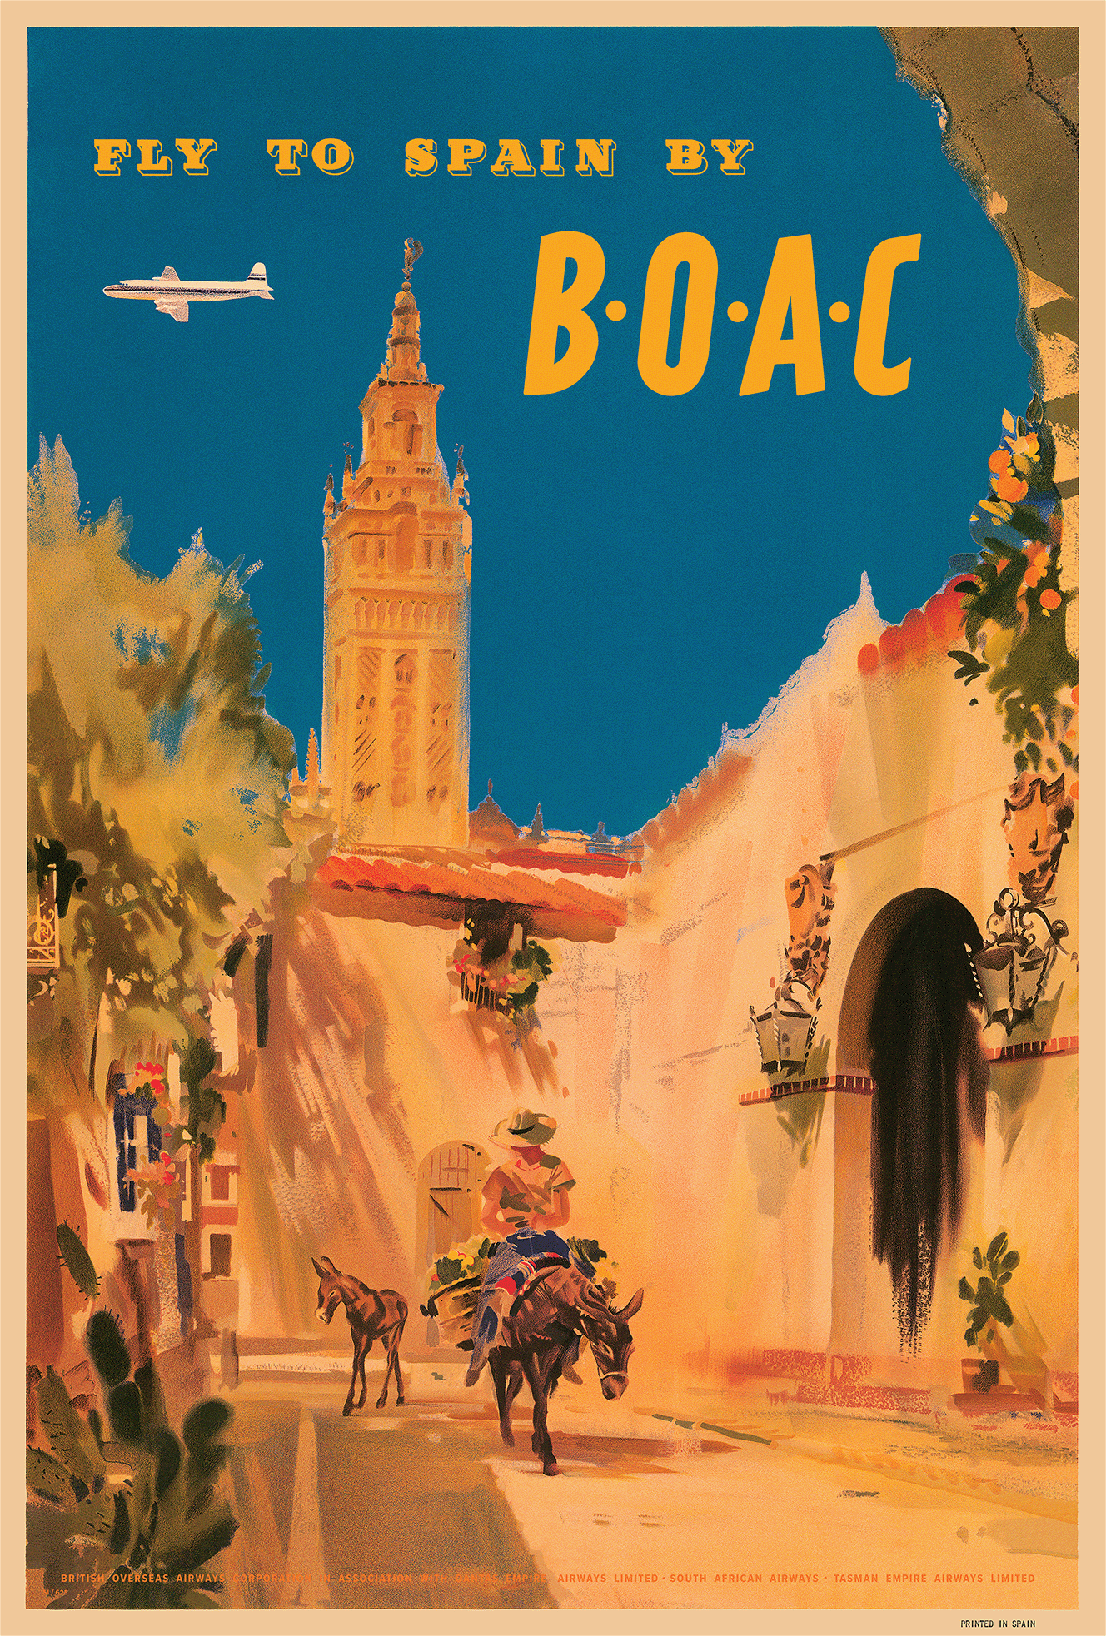 Fly To Spain By B.O.A.C., 1950s, Santa Maria de la Sede de Sevilla.